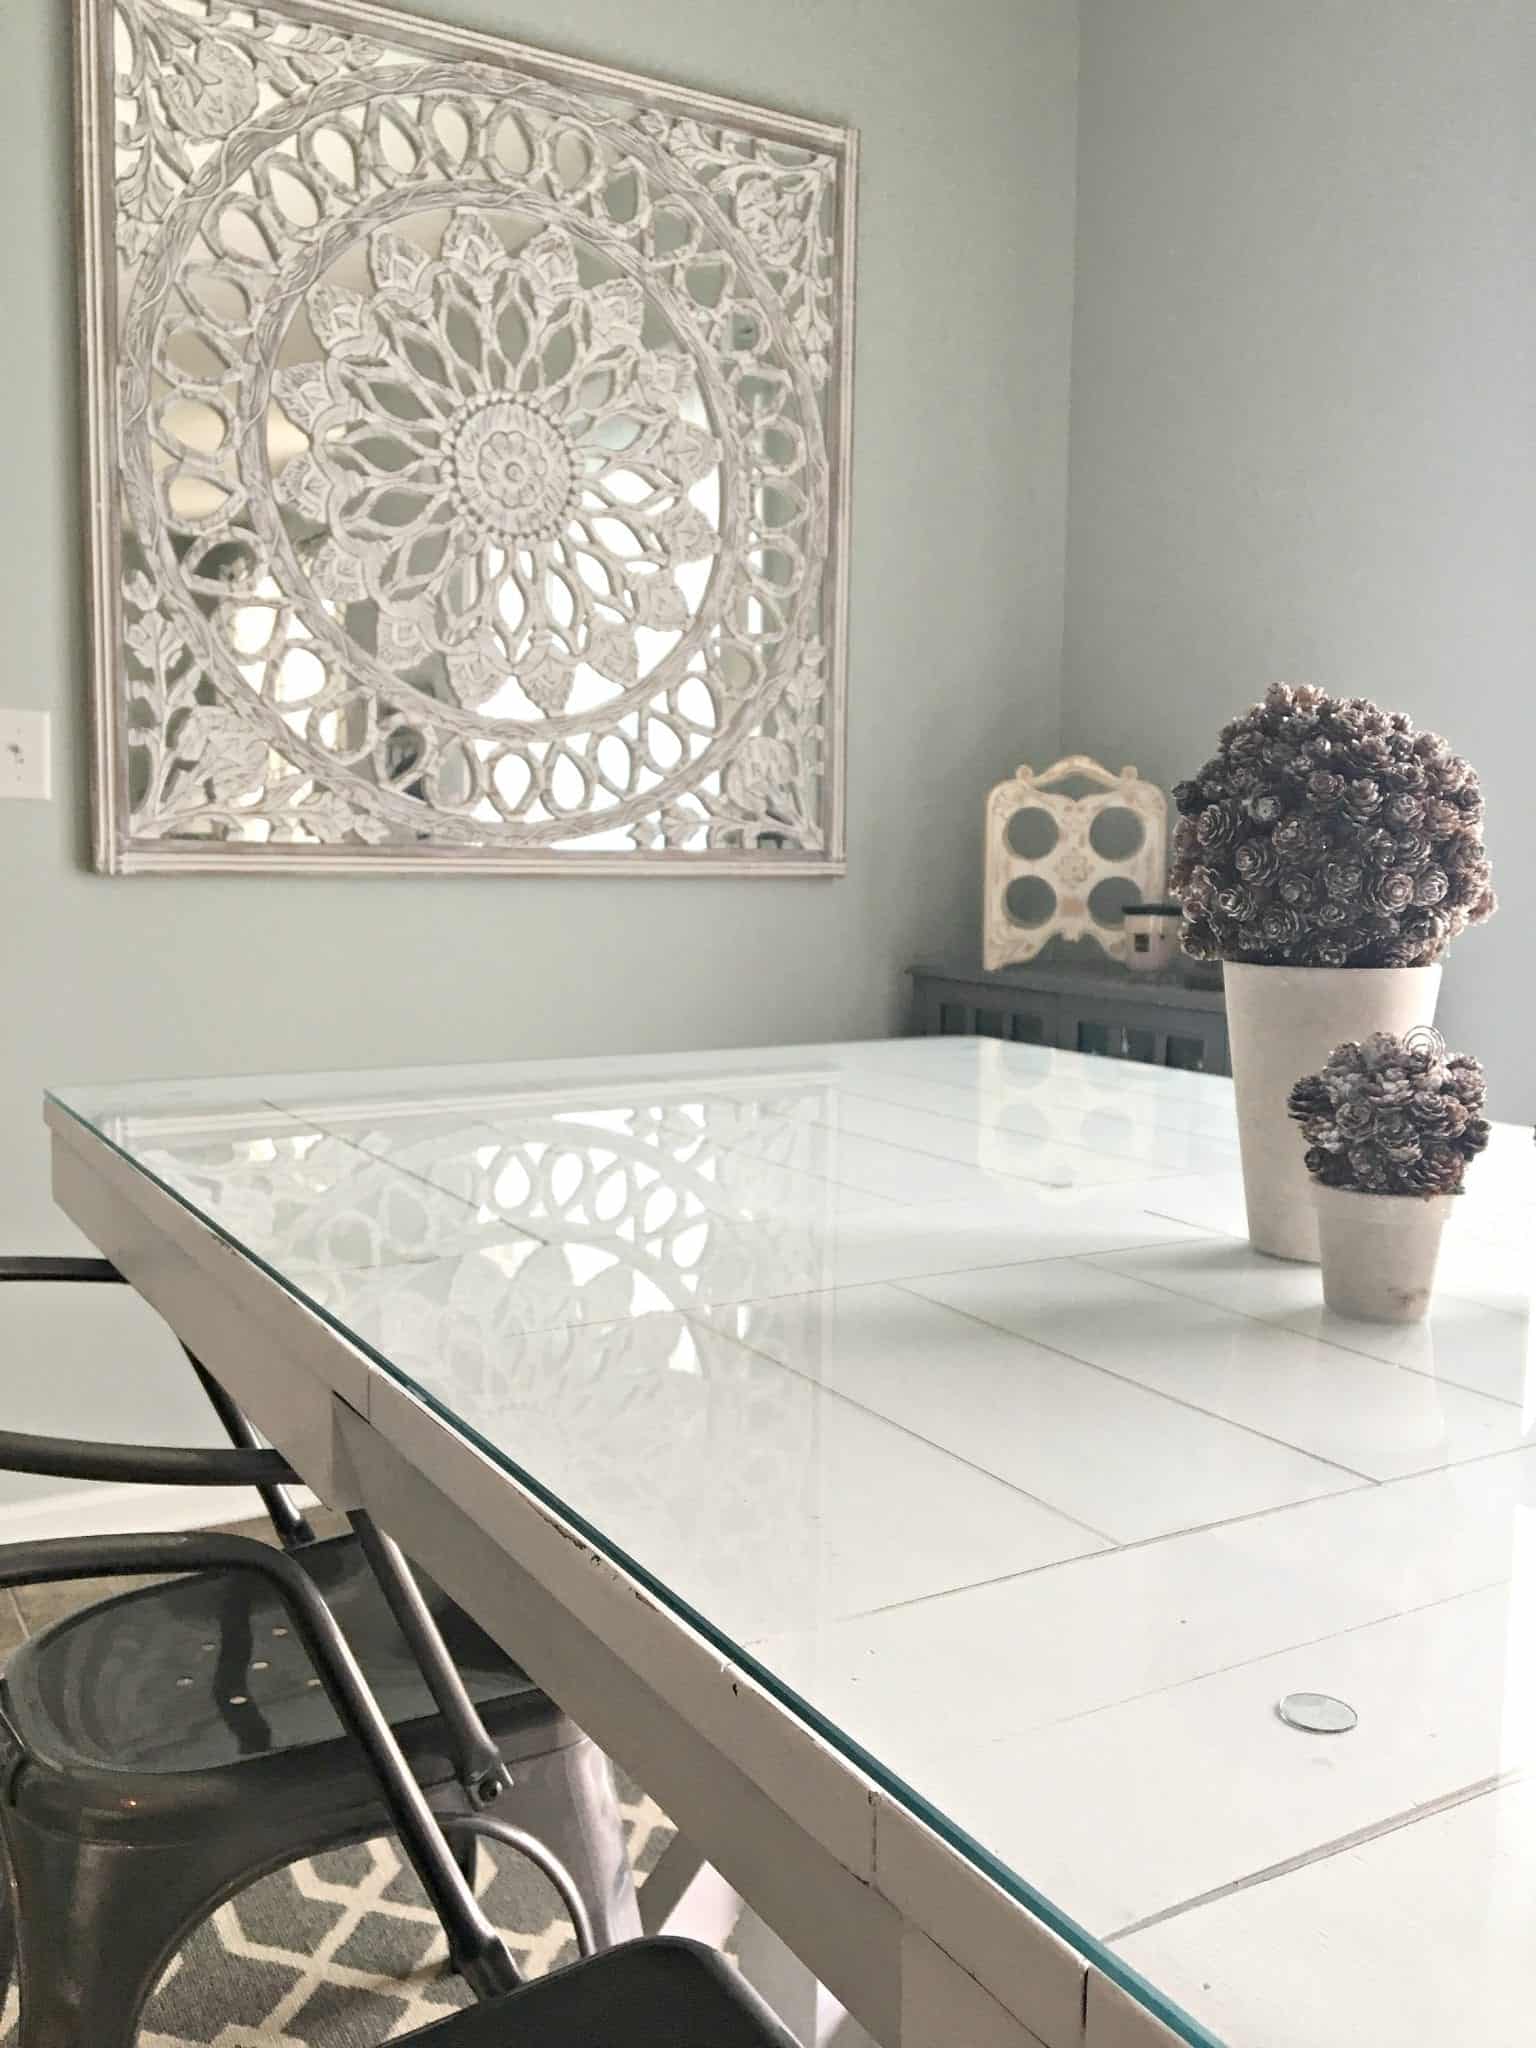 כהה-שולחן צבוע-לבן-בסגנון בית חווה מגולגל